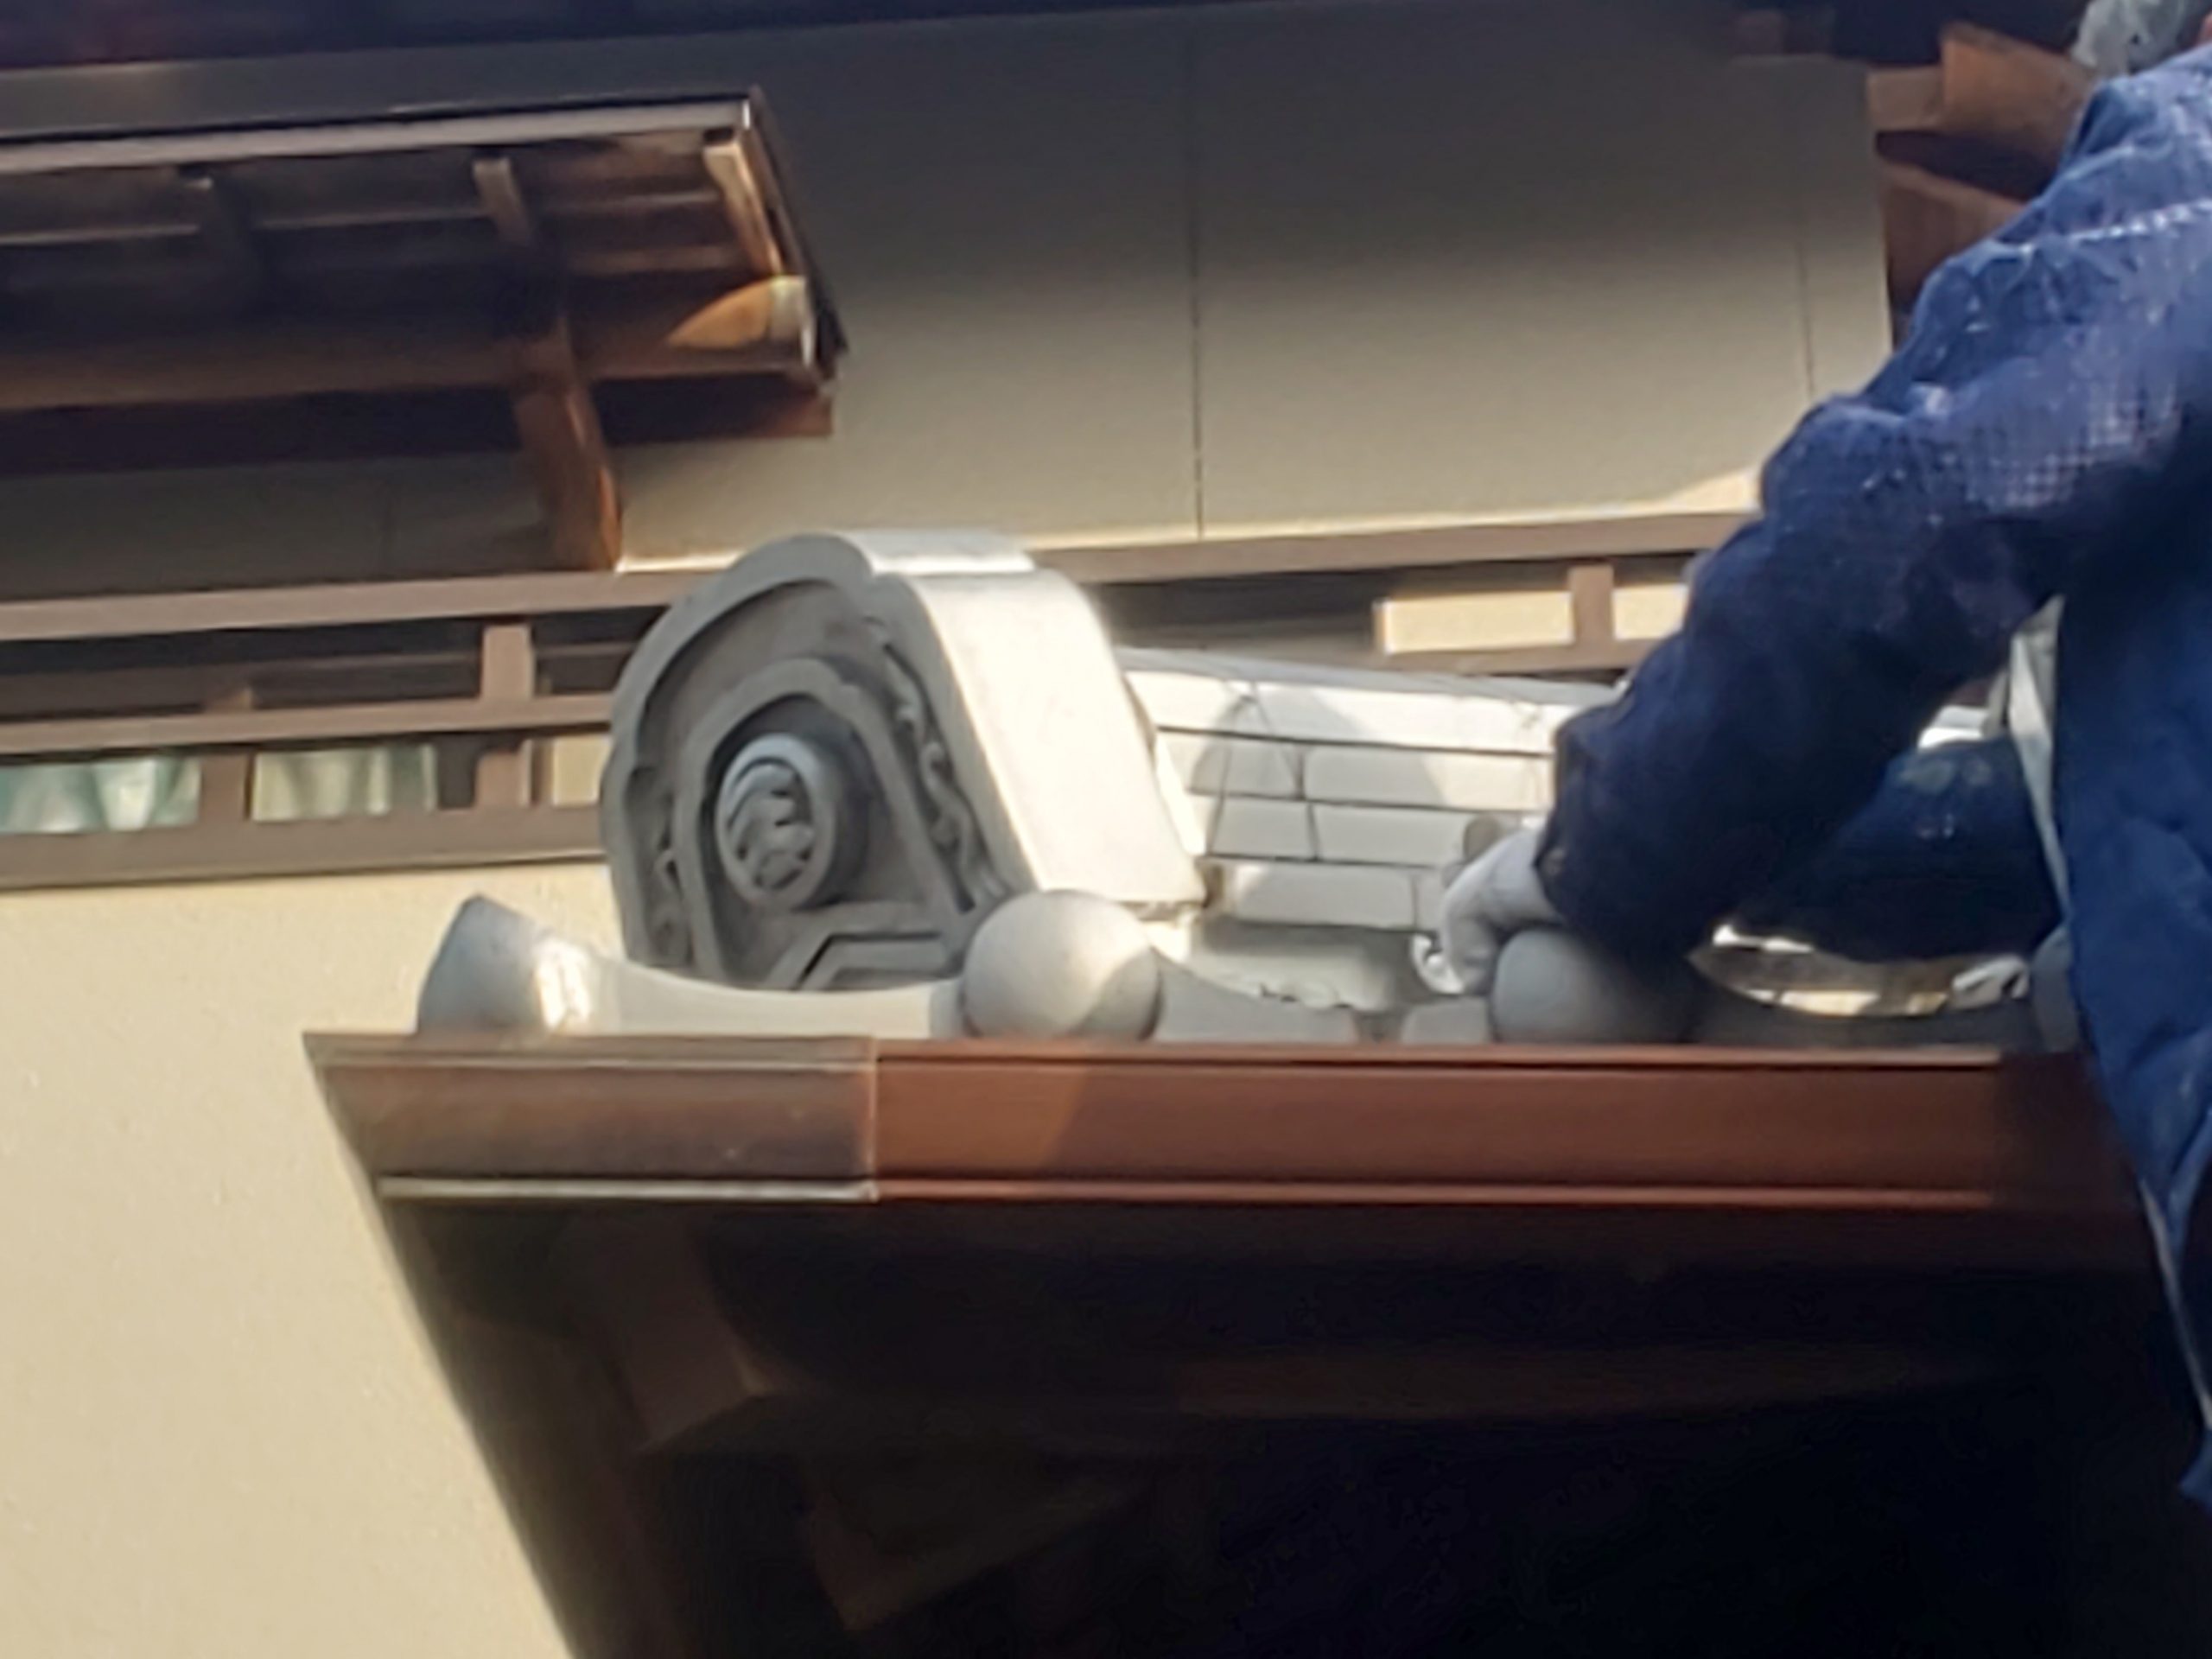 津市小舟、屋根瓦漆喰工事のご紹介をさせて頂きます。